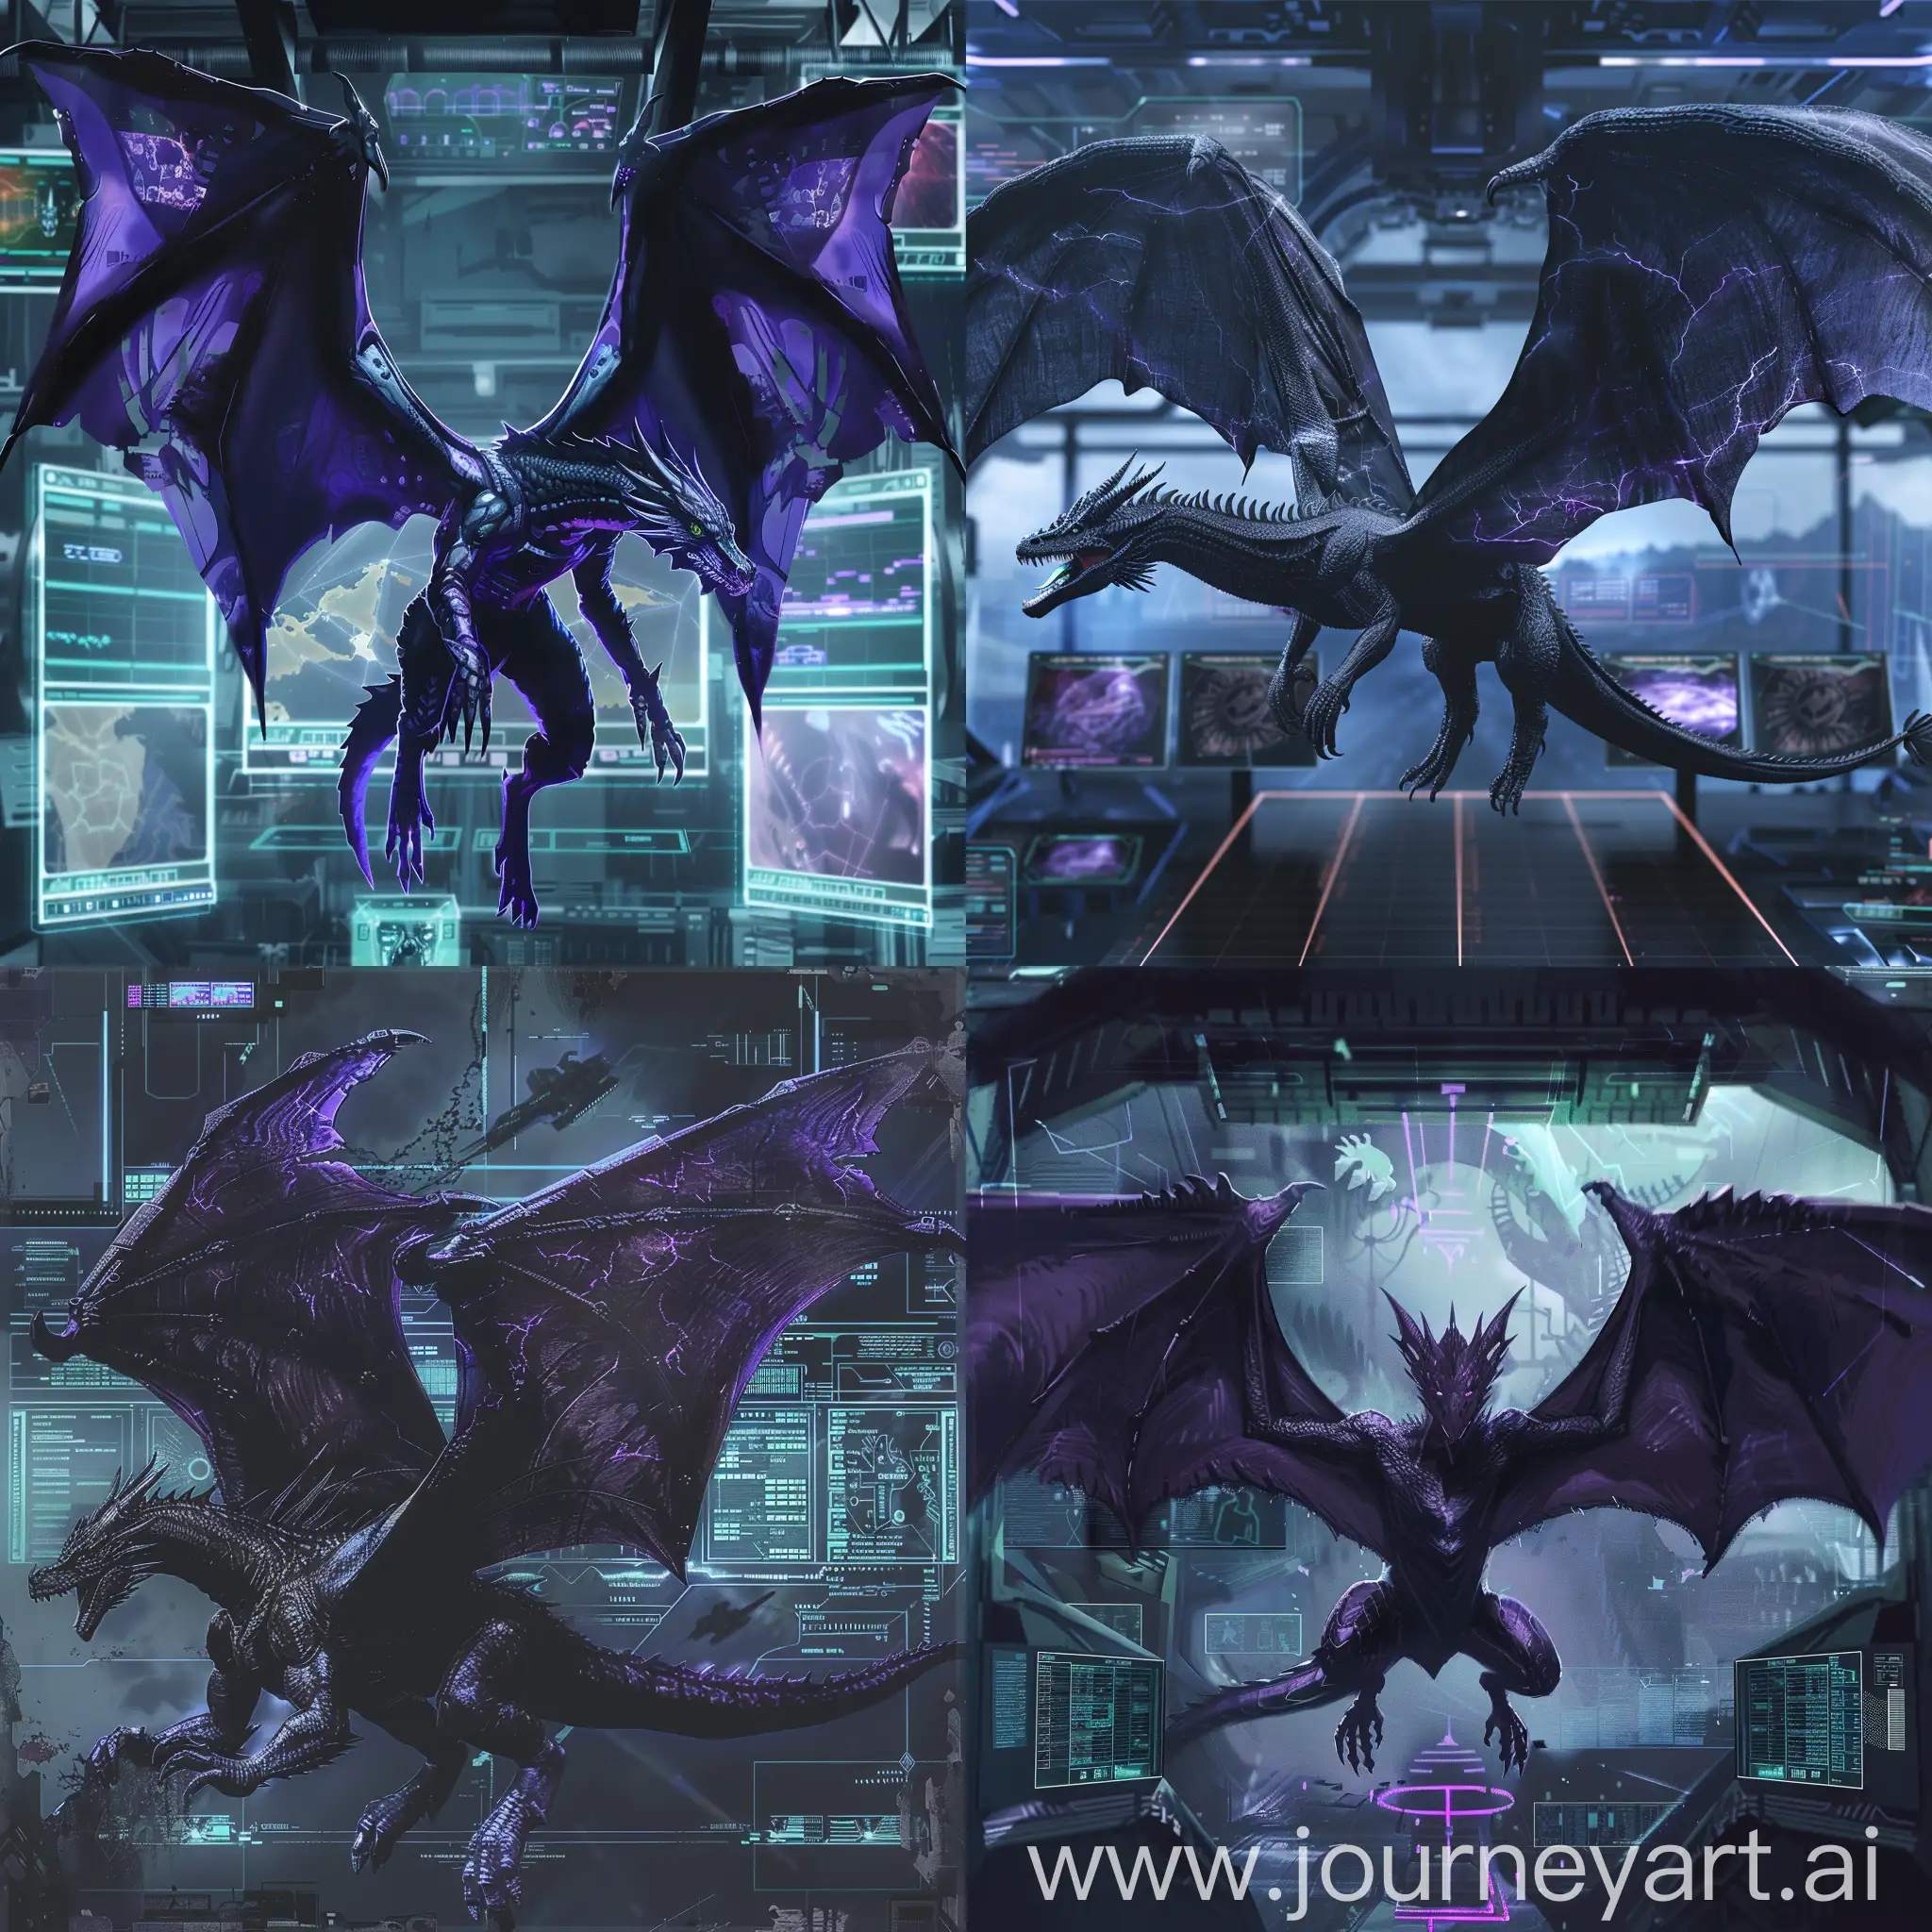 Голотип черно-фиолетового дракона, распростертого на заднем фоне, дракон сильно оттолкнувшего от земли импозантные крылья и замахивающегося вперёд перед фоном, на фоне отчетливо проступают панельные экраны и дисплеи и футуристические элемент